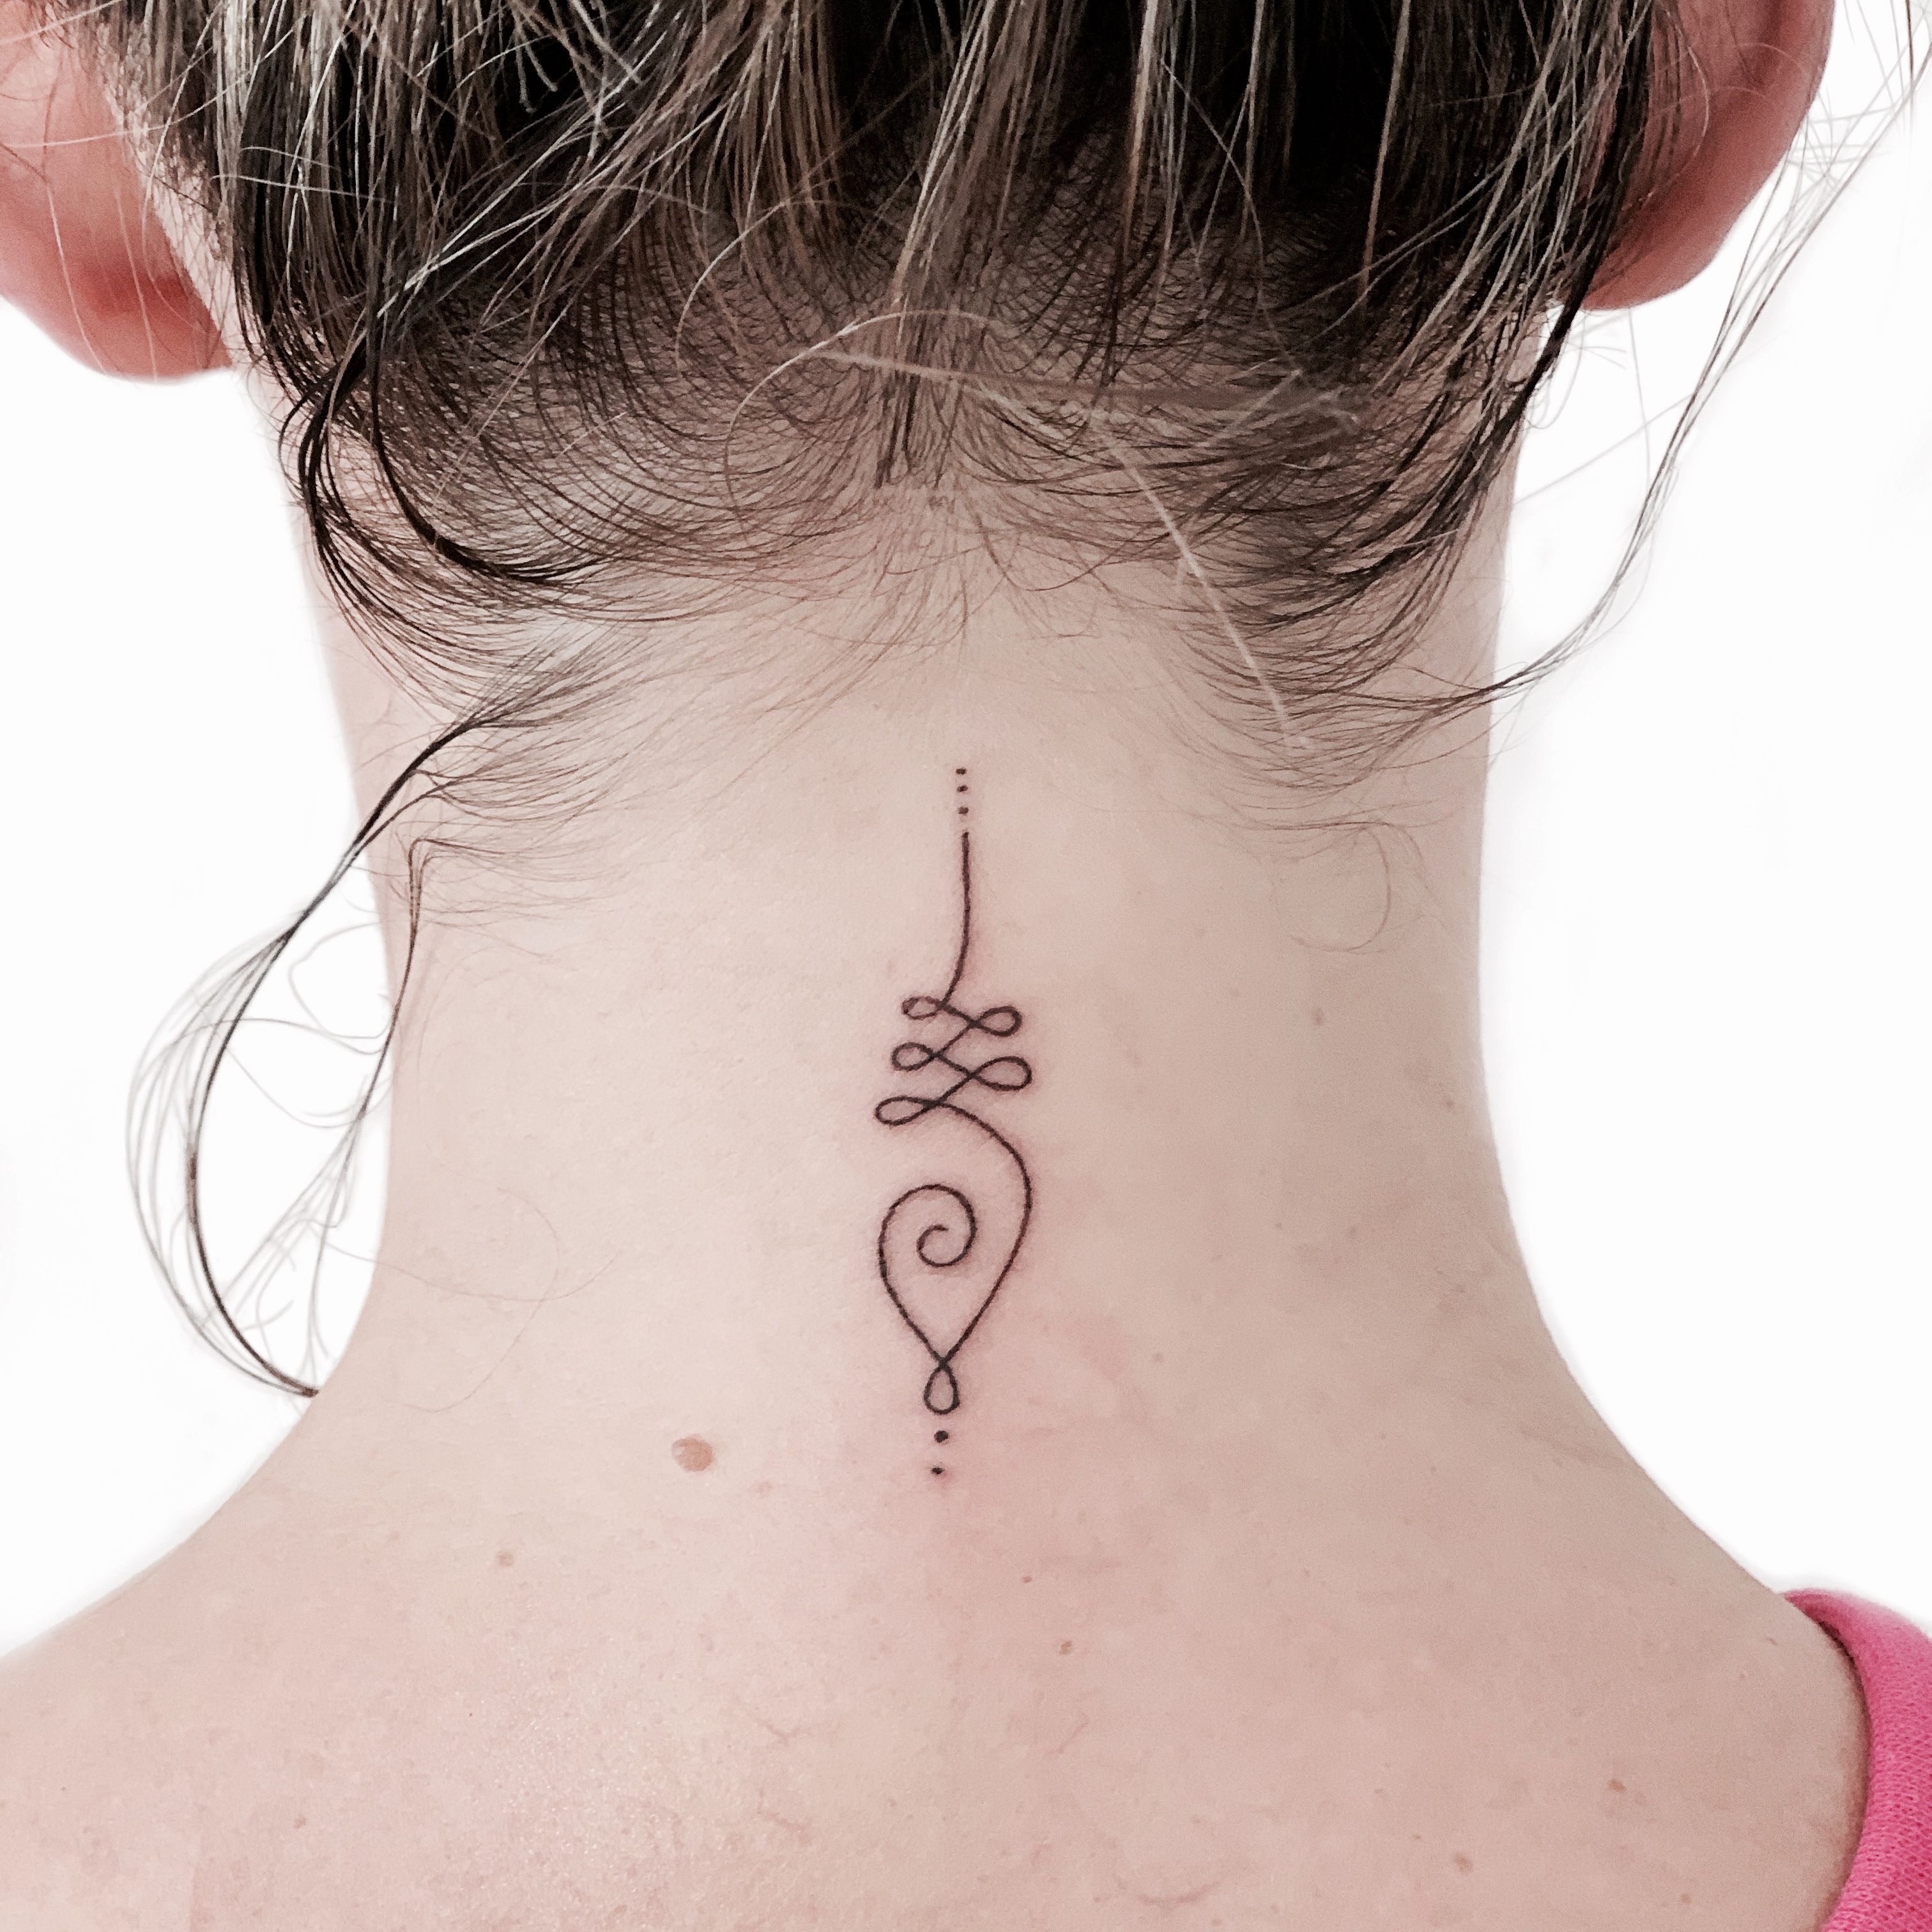 Large Semi-permanent Tattoo Back Tattoo Lotus Mandala Tattoo 2 Week Tattoo  Jagua Henna Sexy Gift Idea Spine Tattoo - Etsy